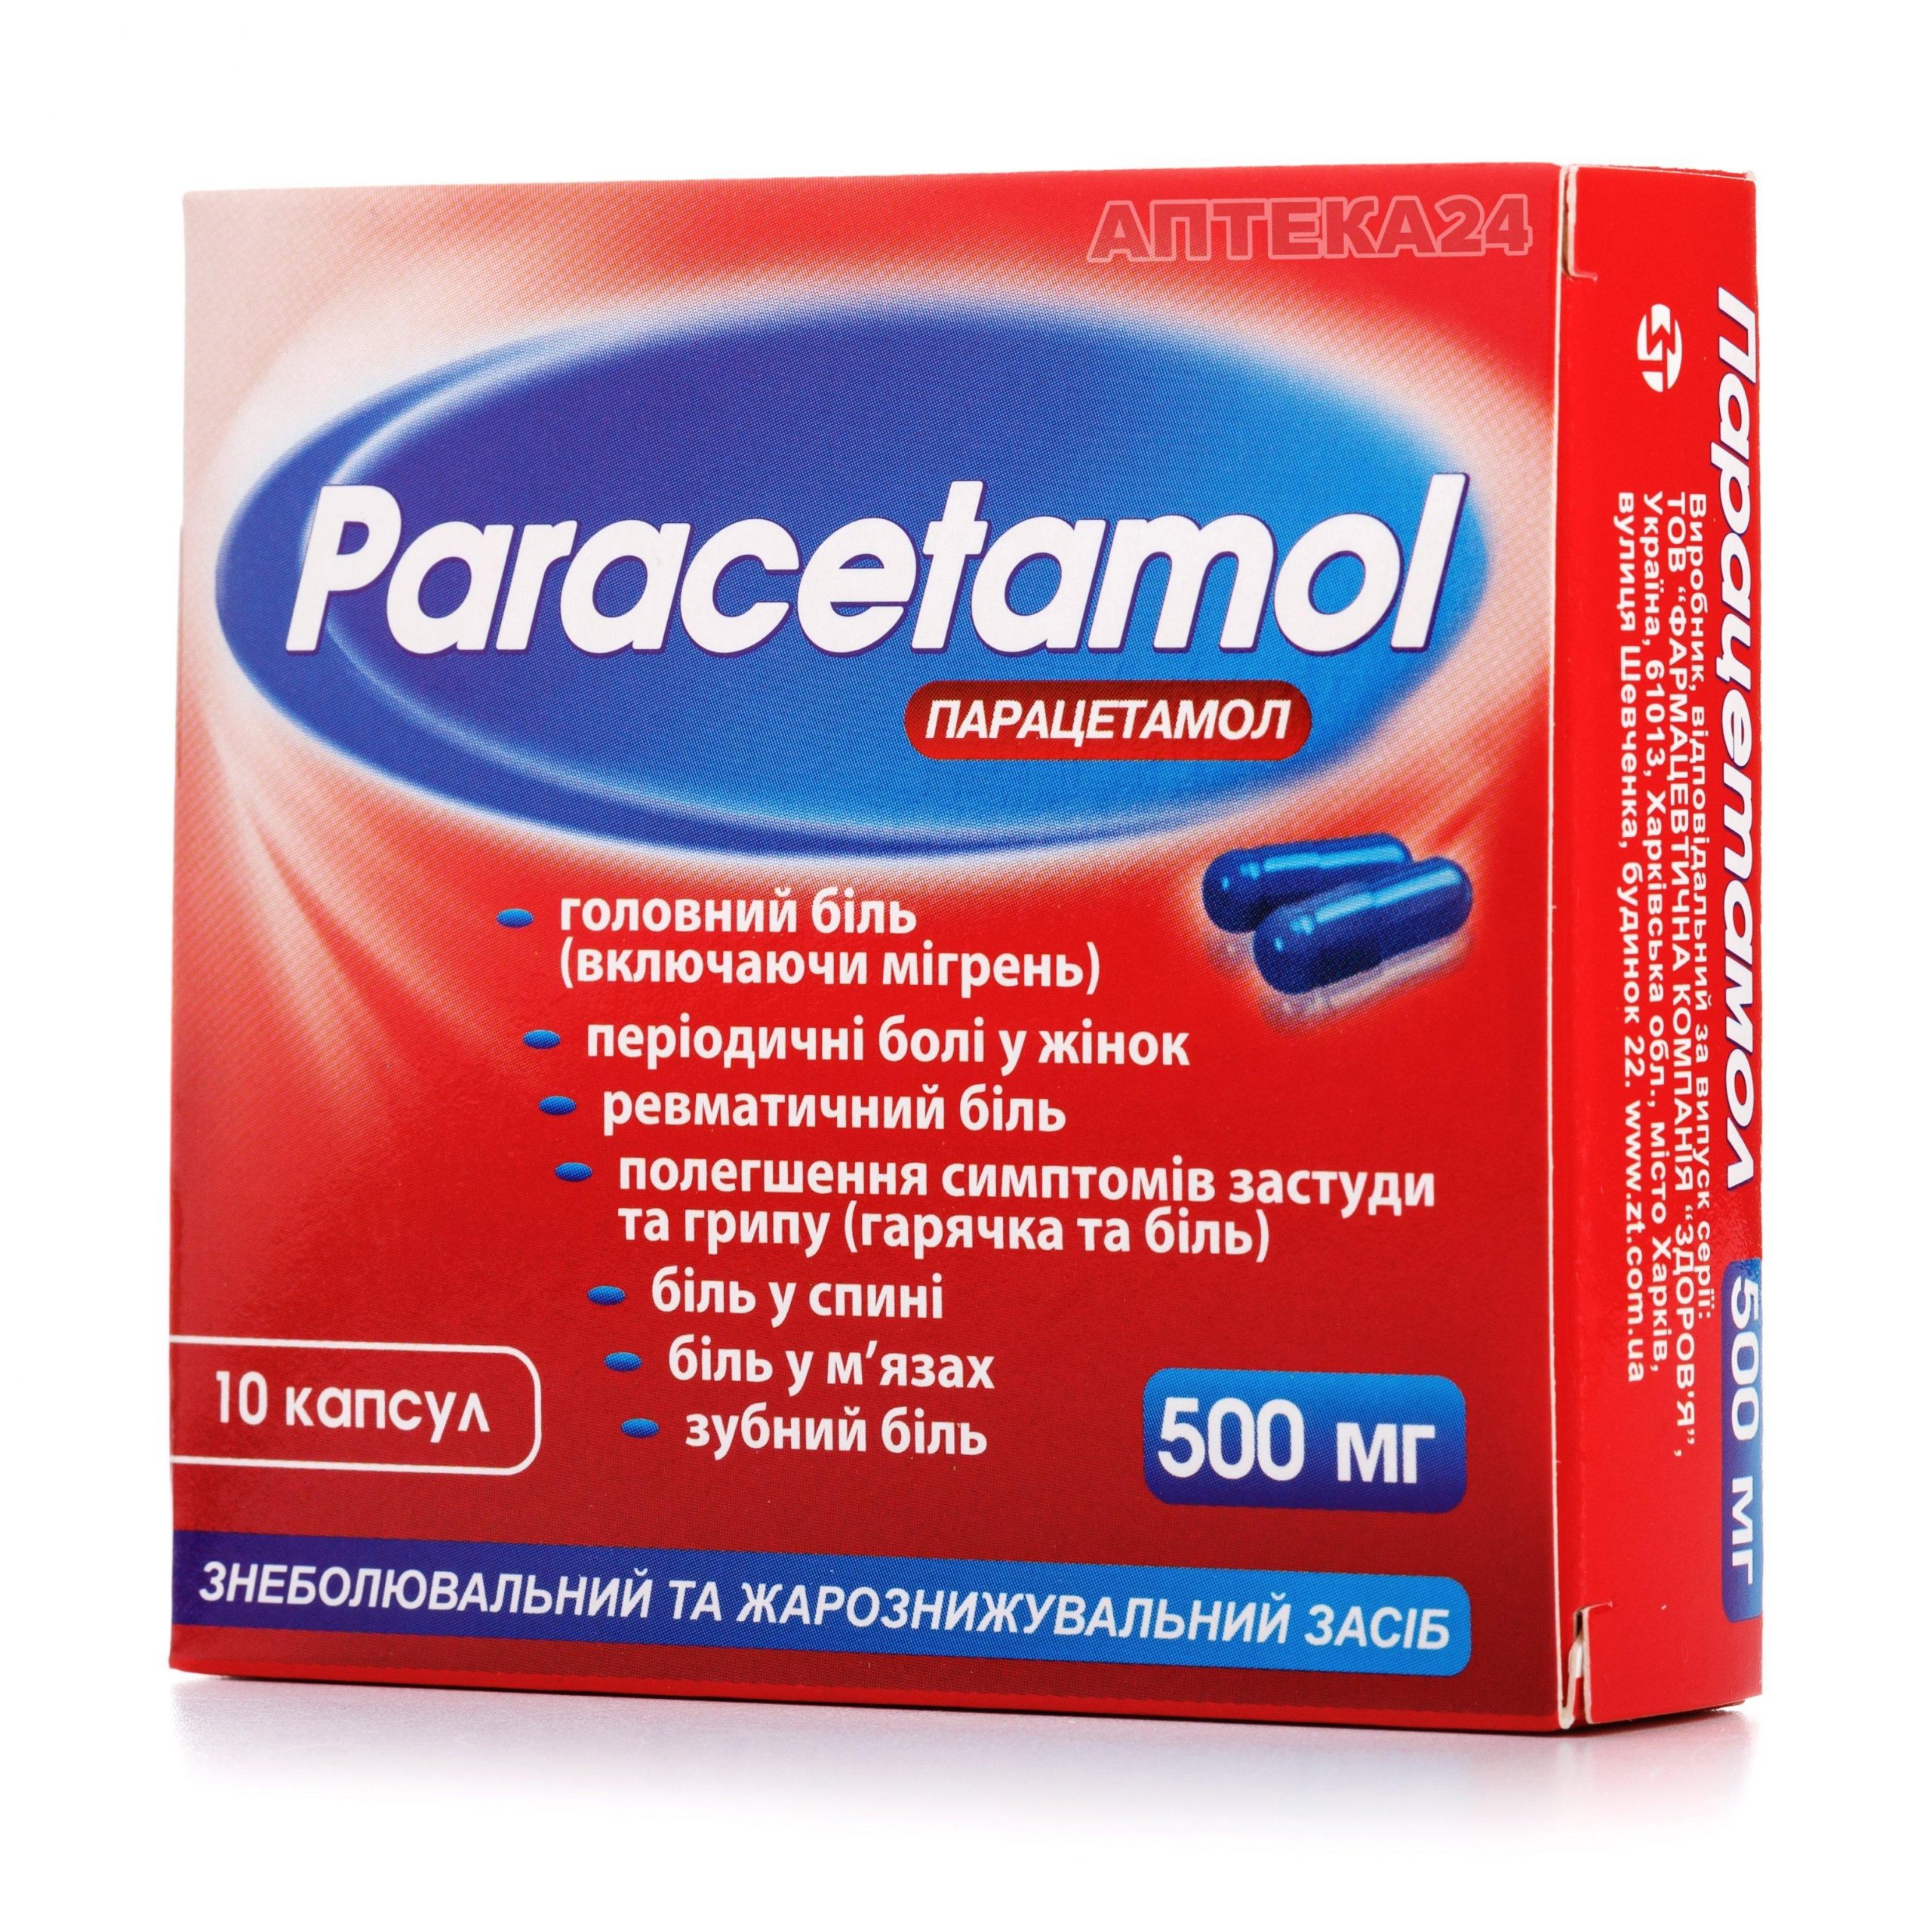 Парацетамол-Здоровье капсулы 500 мг N10_6001b77020f77.jpeg